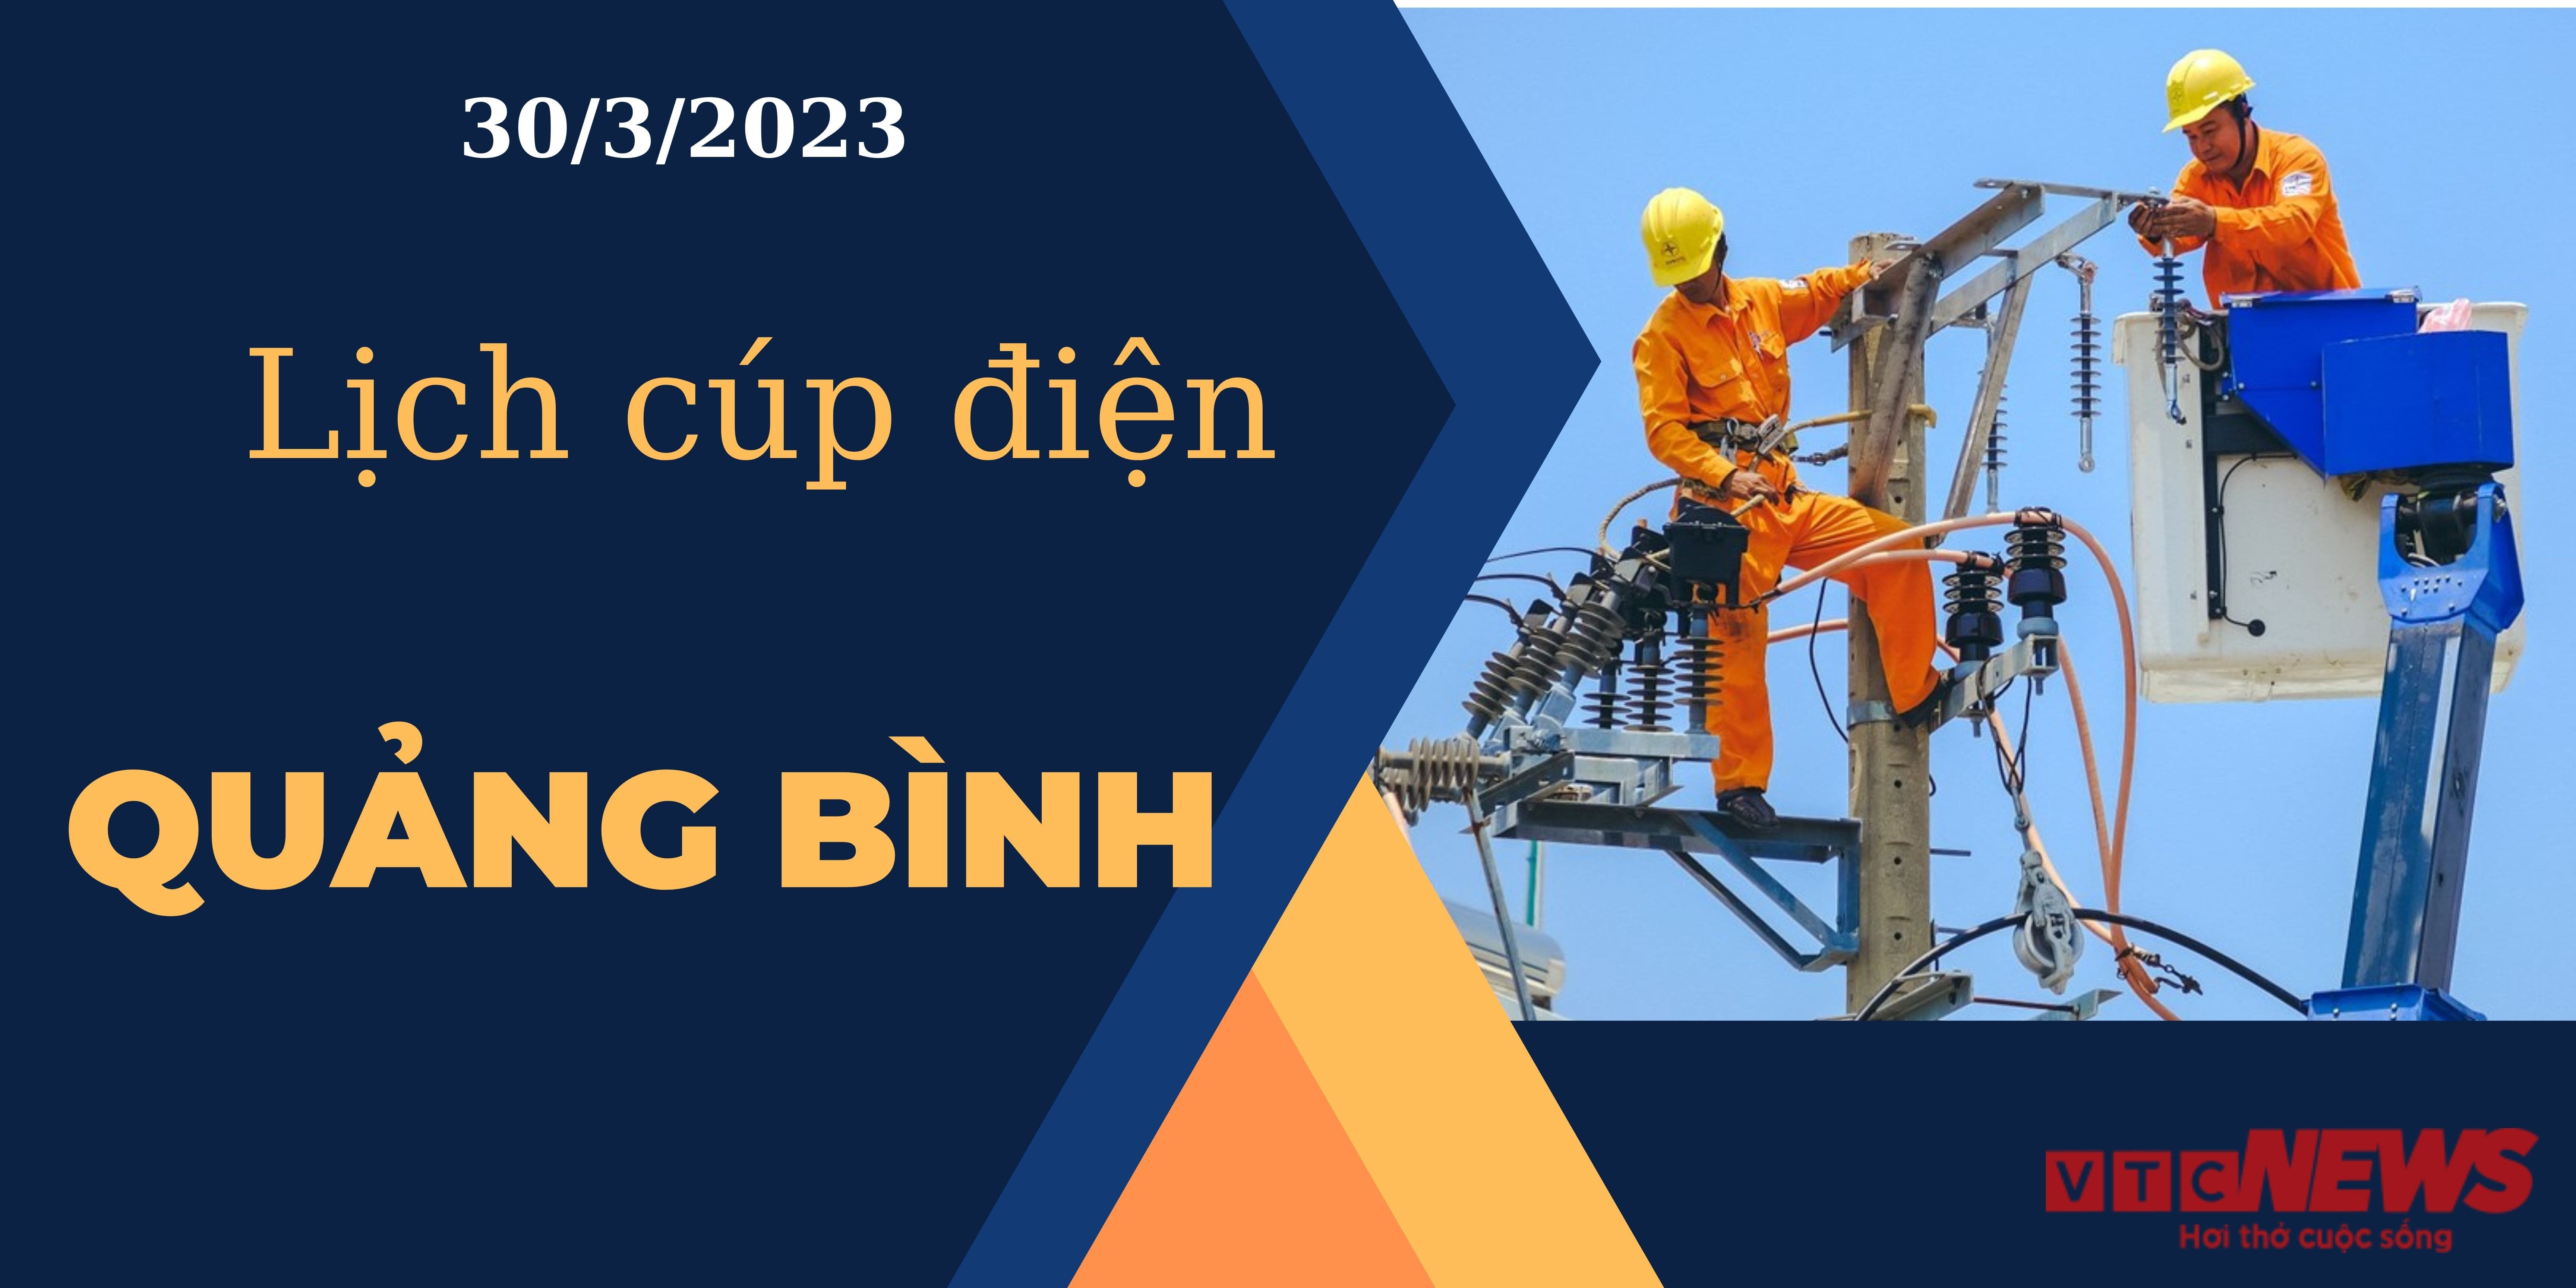 Lịch cúp điện hôm nay tại Quảng Bình ngày 30/3/2023 - 1